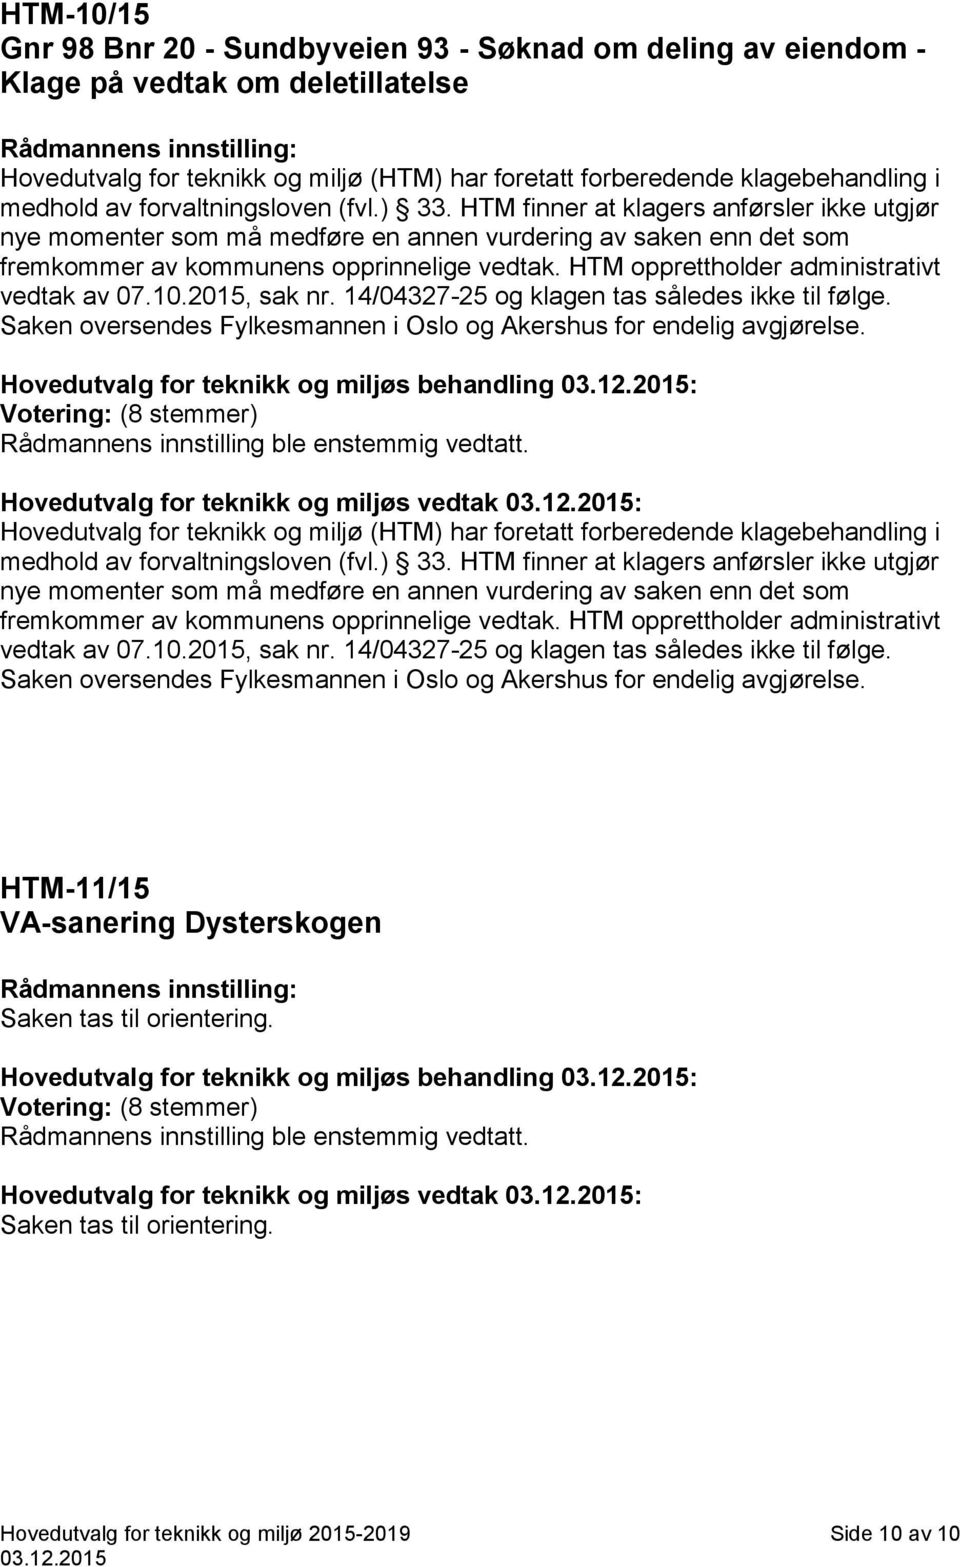 HTM opprettholder administrativt vedtak av 07.10.2015, sak nr. 14/04327-25 og klagen tas således ikke til følge. Saken oversendes Fylkesmannen i Oslo og Akershus for endelig avgjørelse.